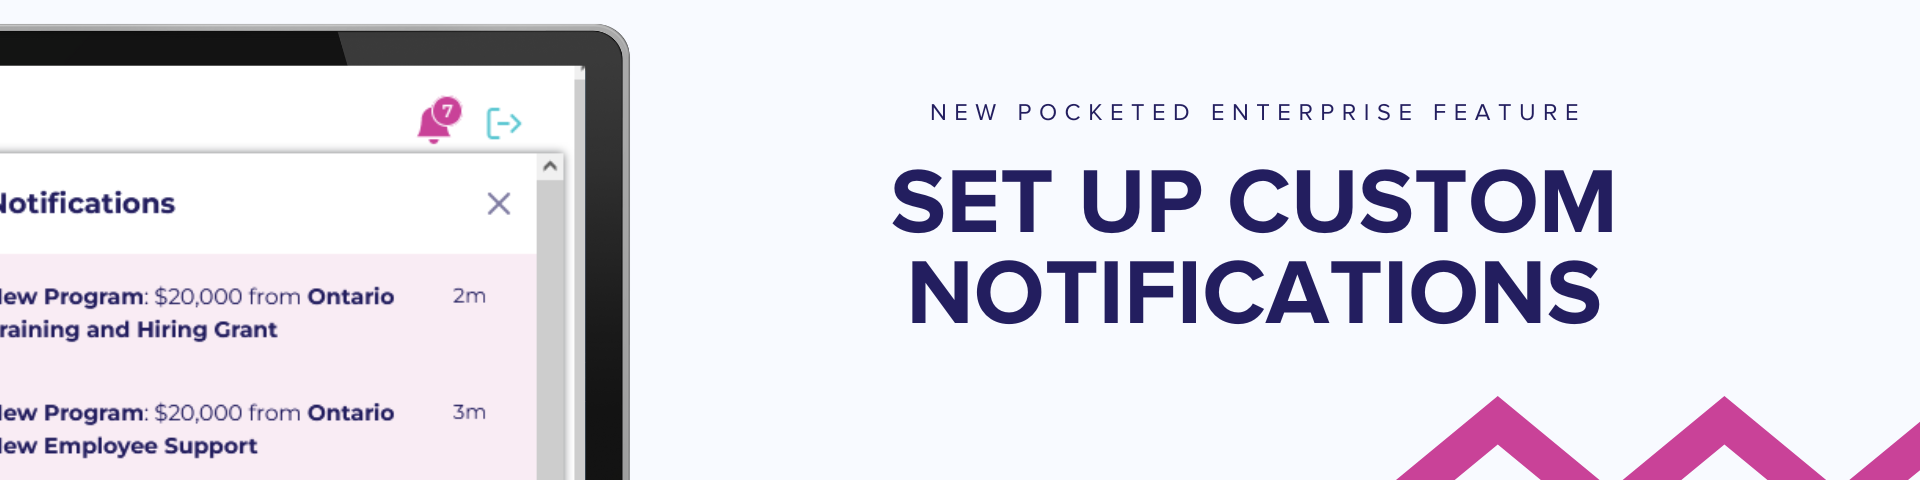 Sneak peek of Pocketed Enterprise custom notifications